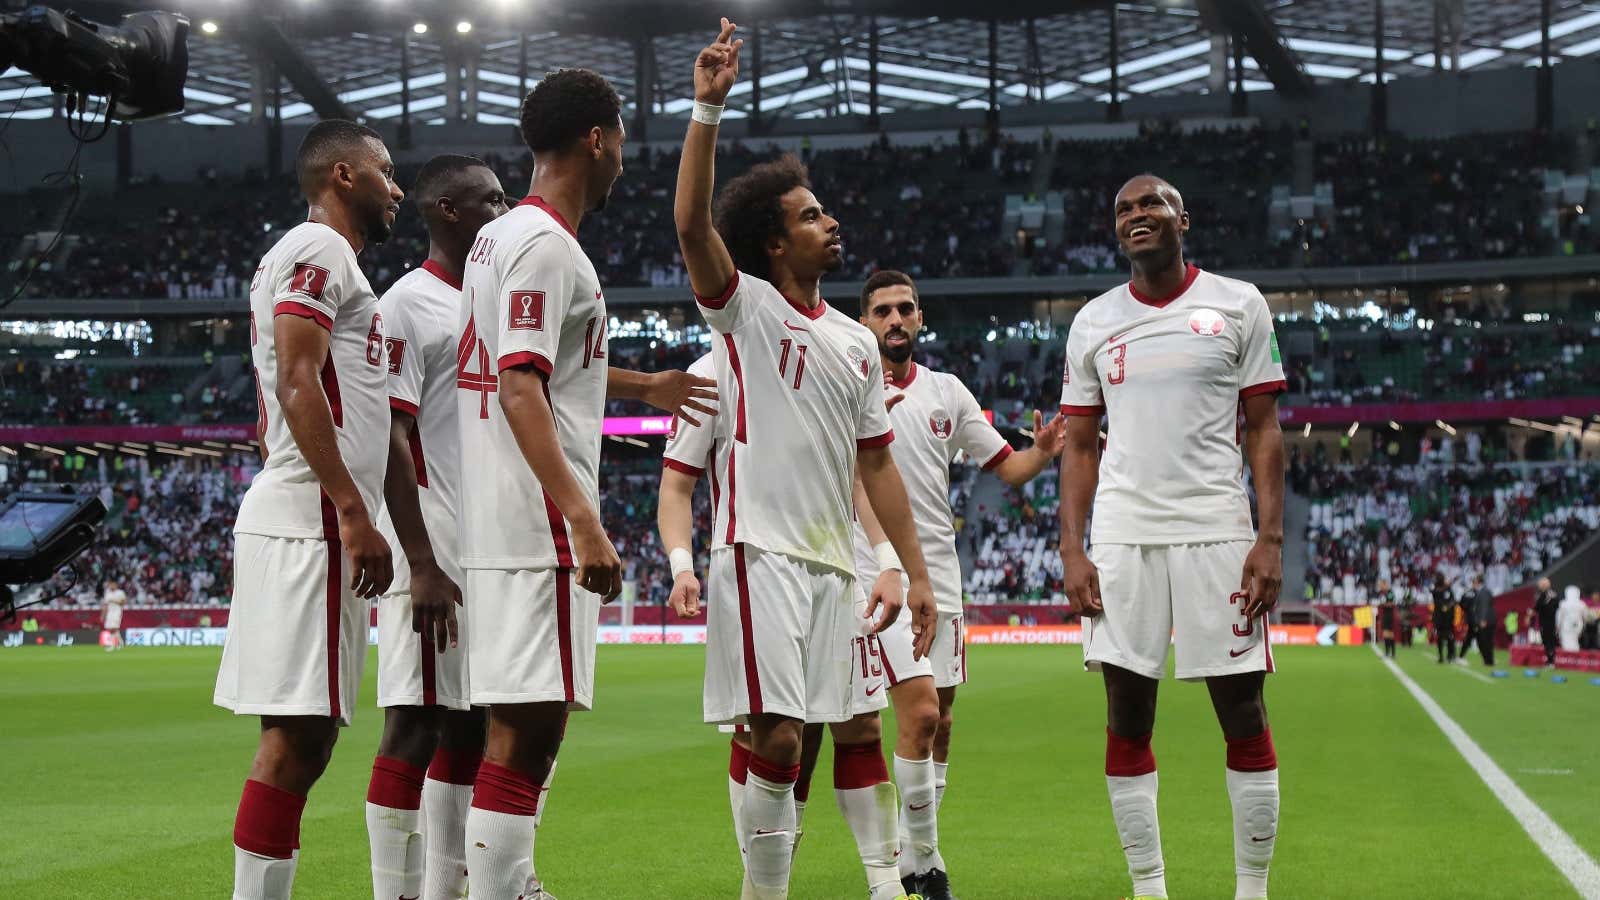 القنوات الناقلة لمباراة قطر والجزائر qatar-vs-algeria اليوم نصف نهائي كأس العرب 2021